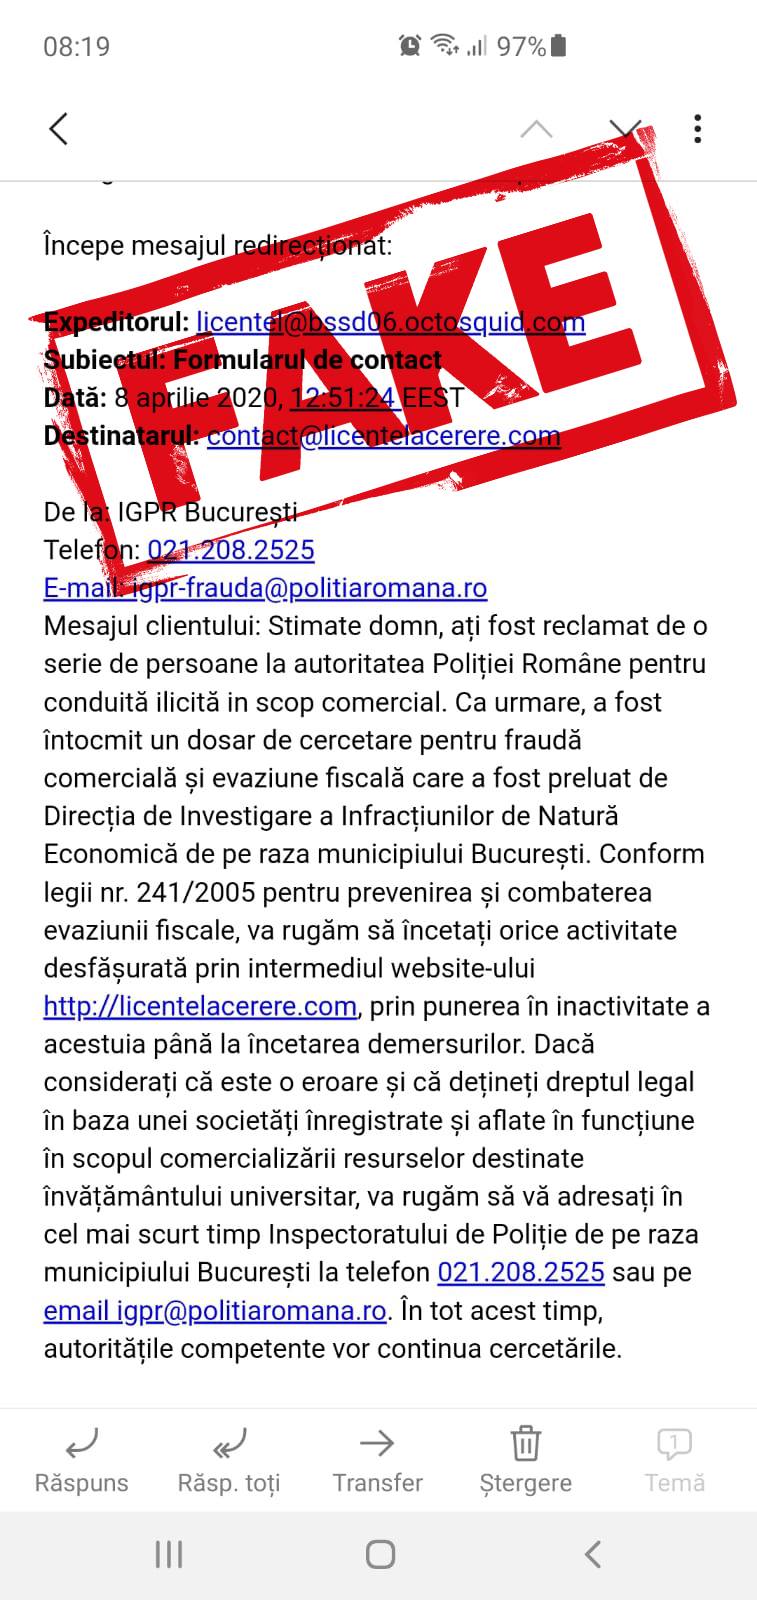 La policía rumana investiga el phishing